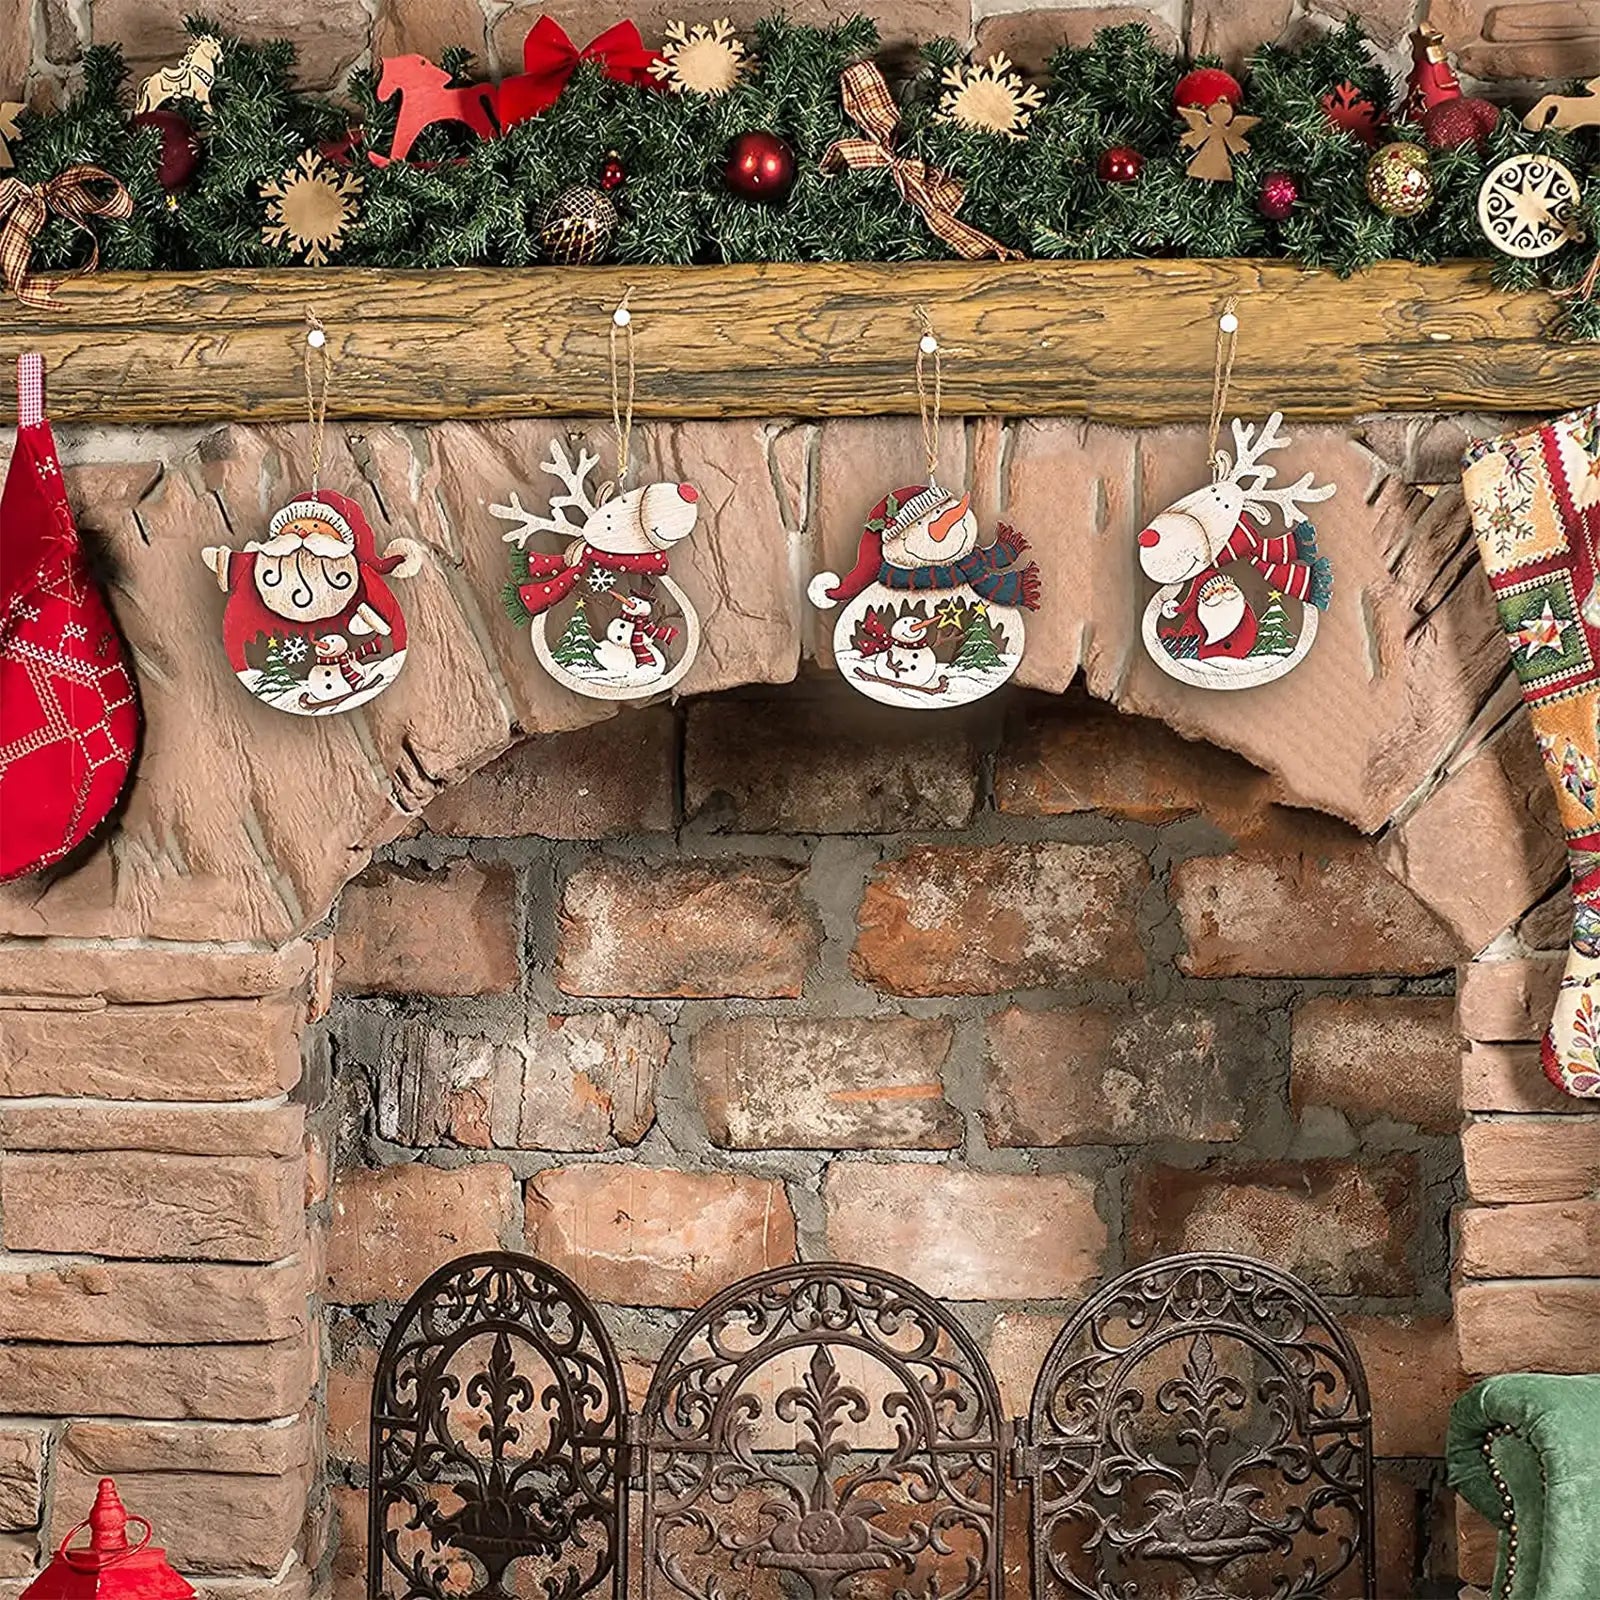 Juego de 8 adornos navideños para árbol de Navidad, decoraciones colgantes retro 